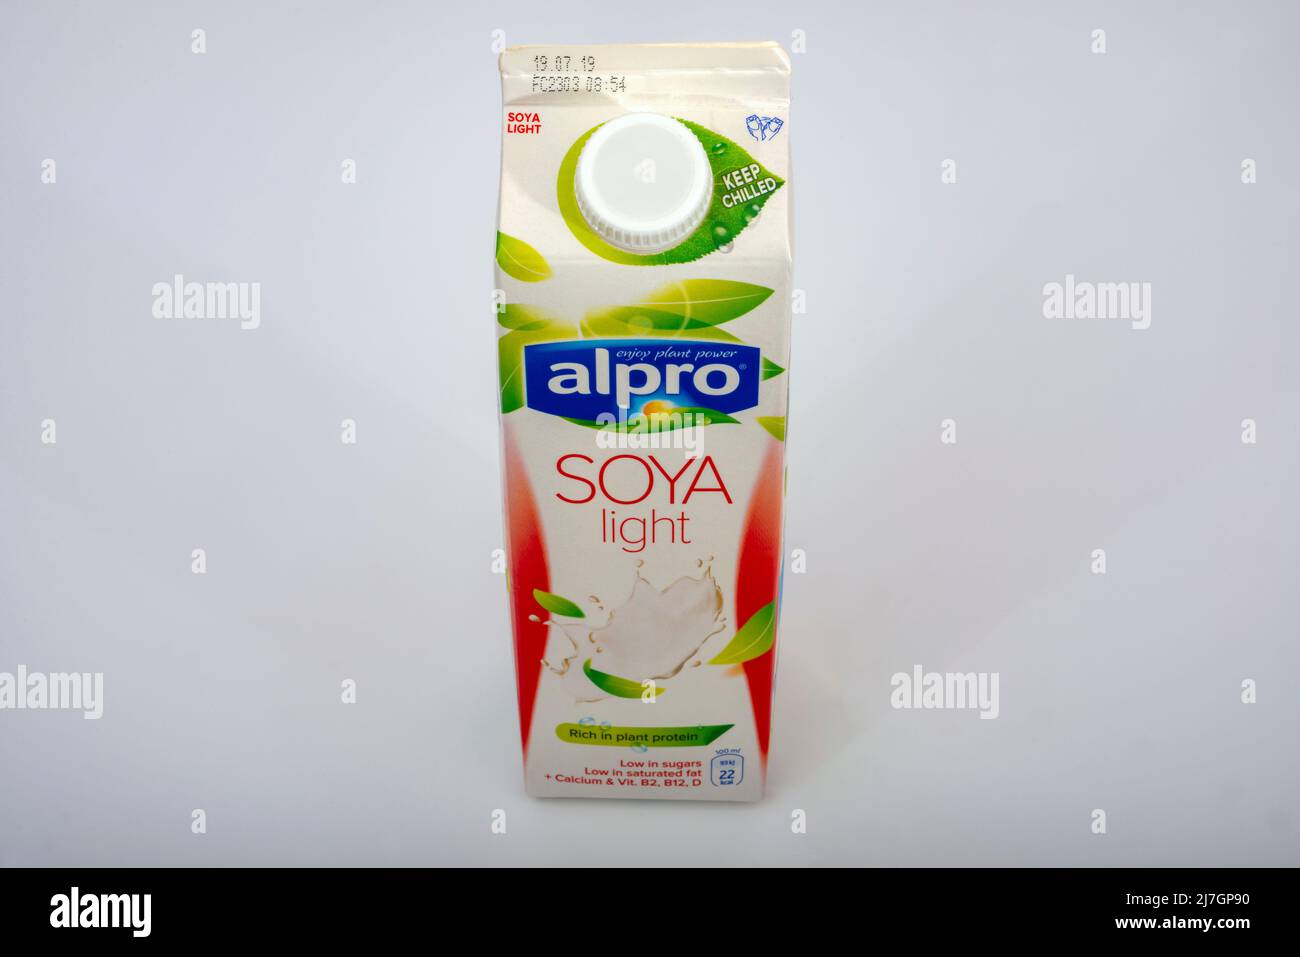 Alpro soya light Stock Photo